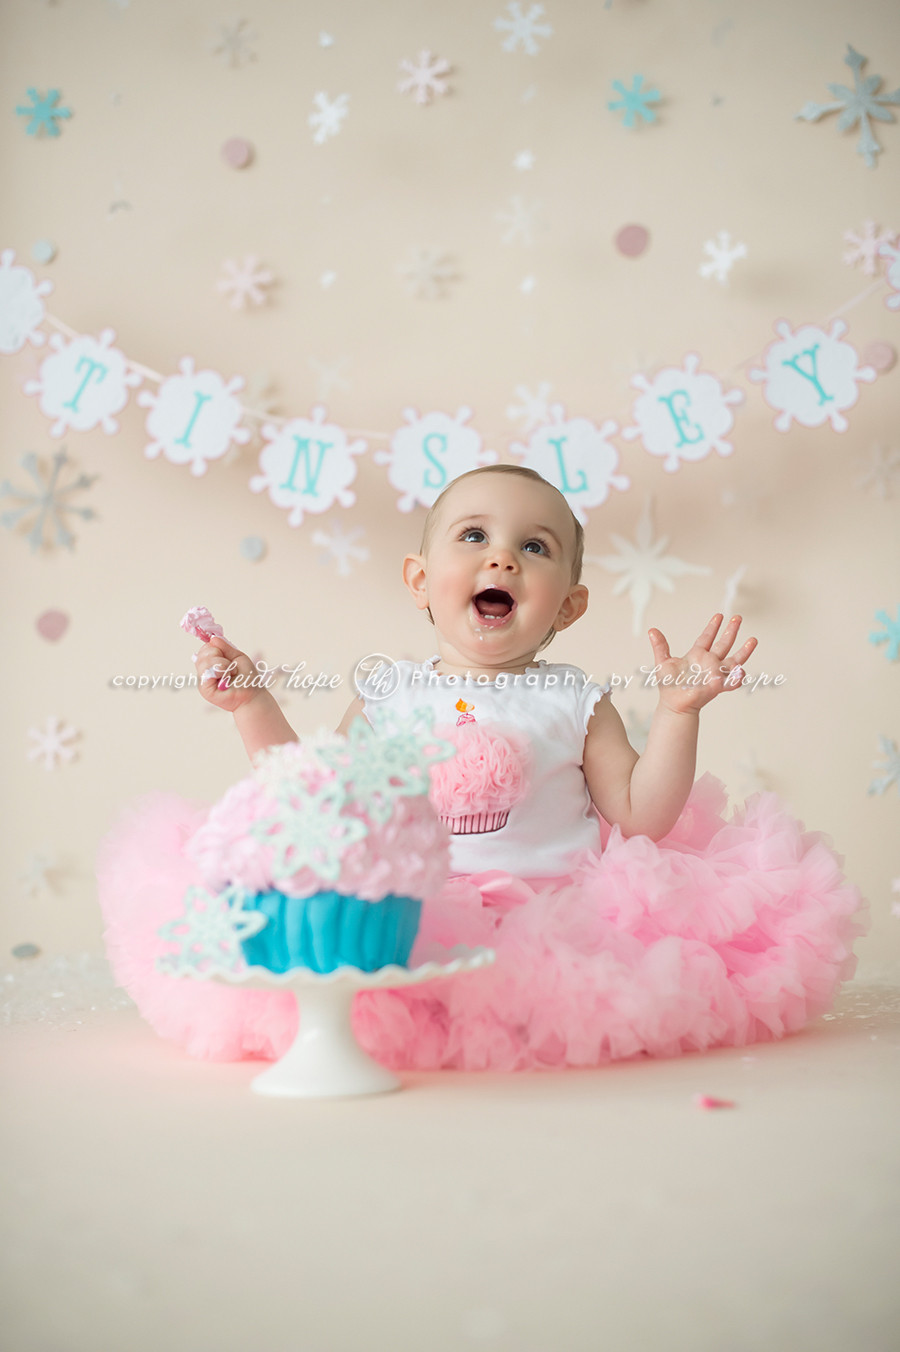 First Birthday Smash Cake
 A winter wonderland cake smash with first birthday girl T